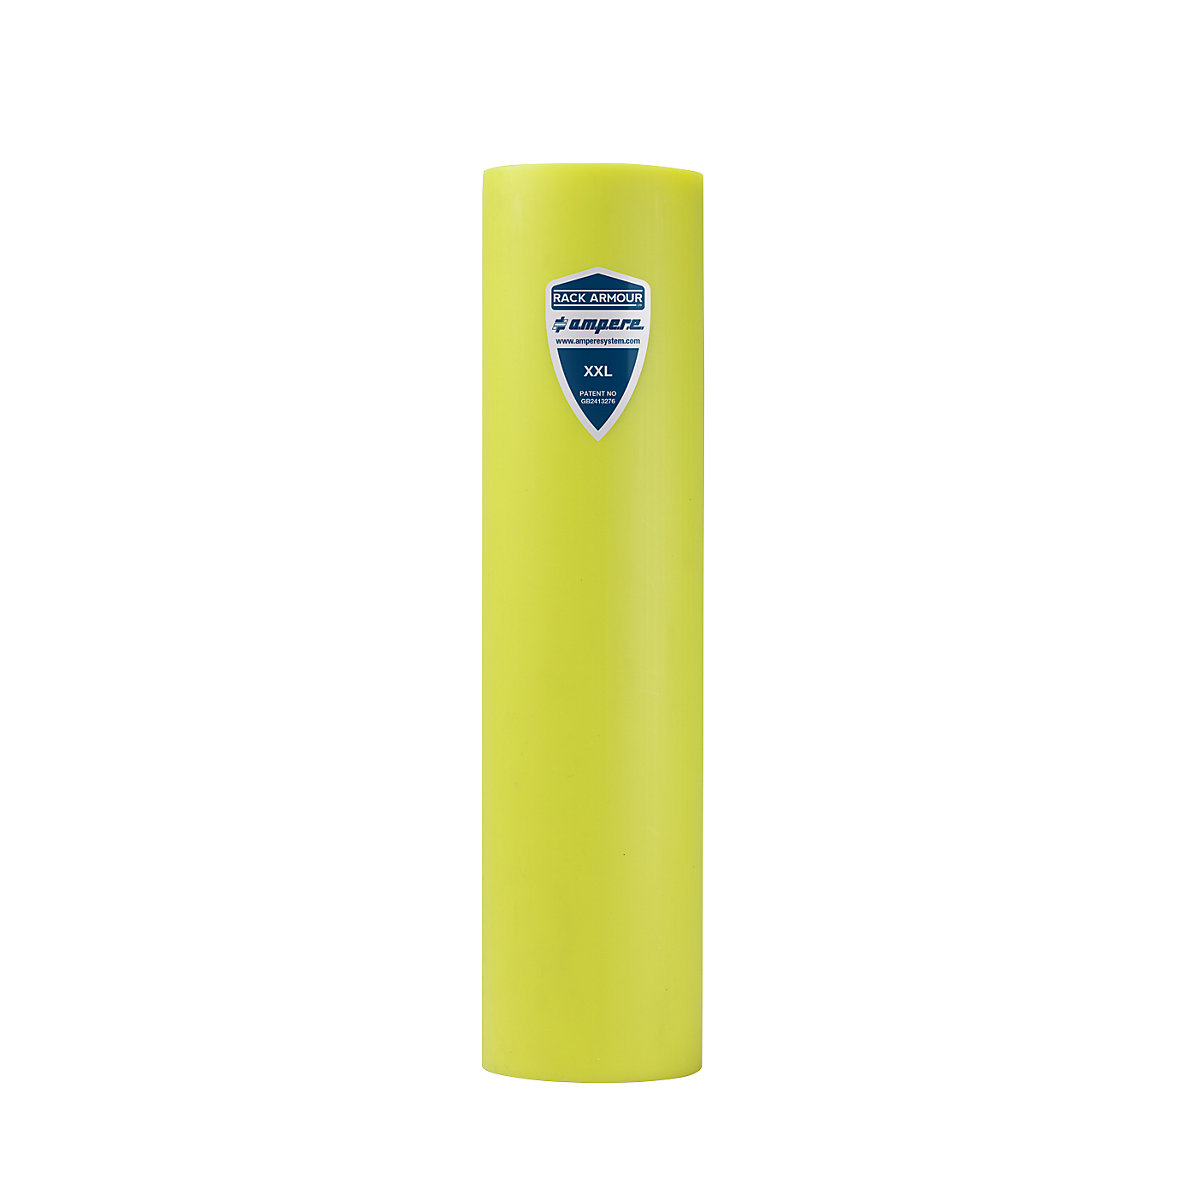 Regalanfahrschutz Ampere, aus Kunststoff, gelb, Regalständerbreite 111 – 120 mm